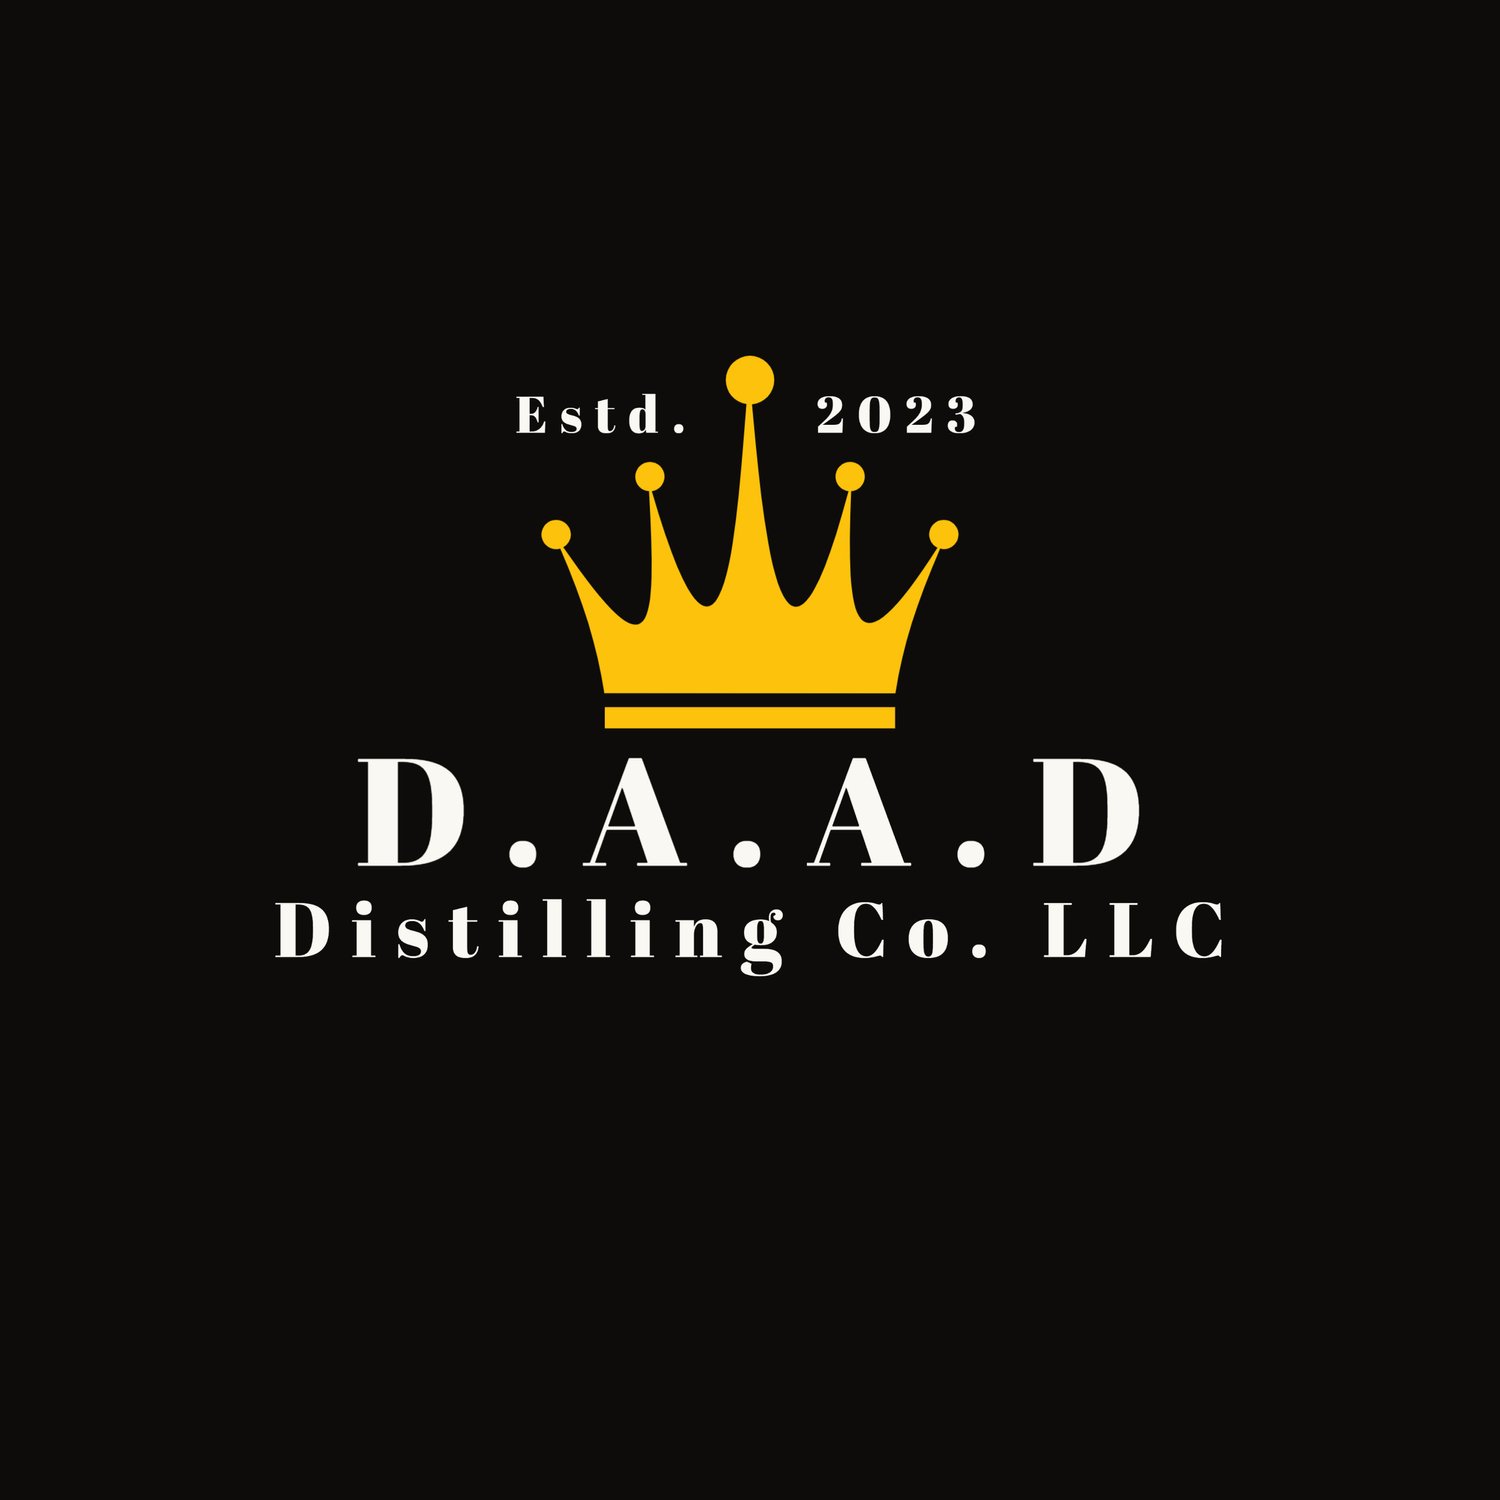 DAAD Distilling Company